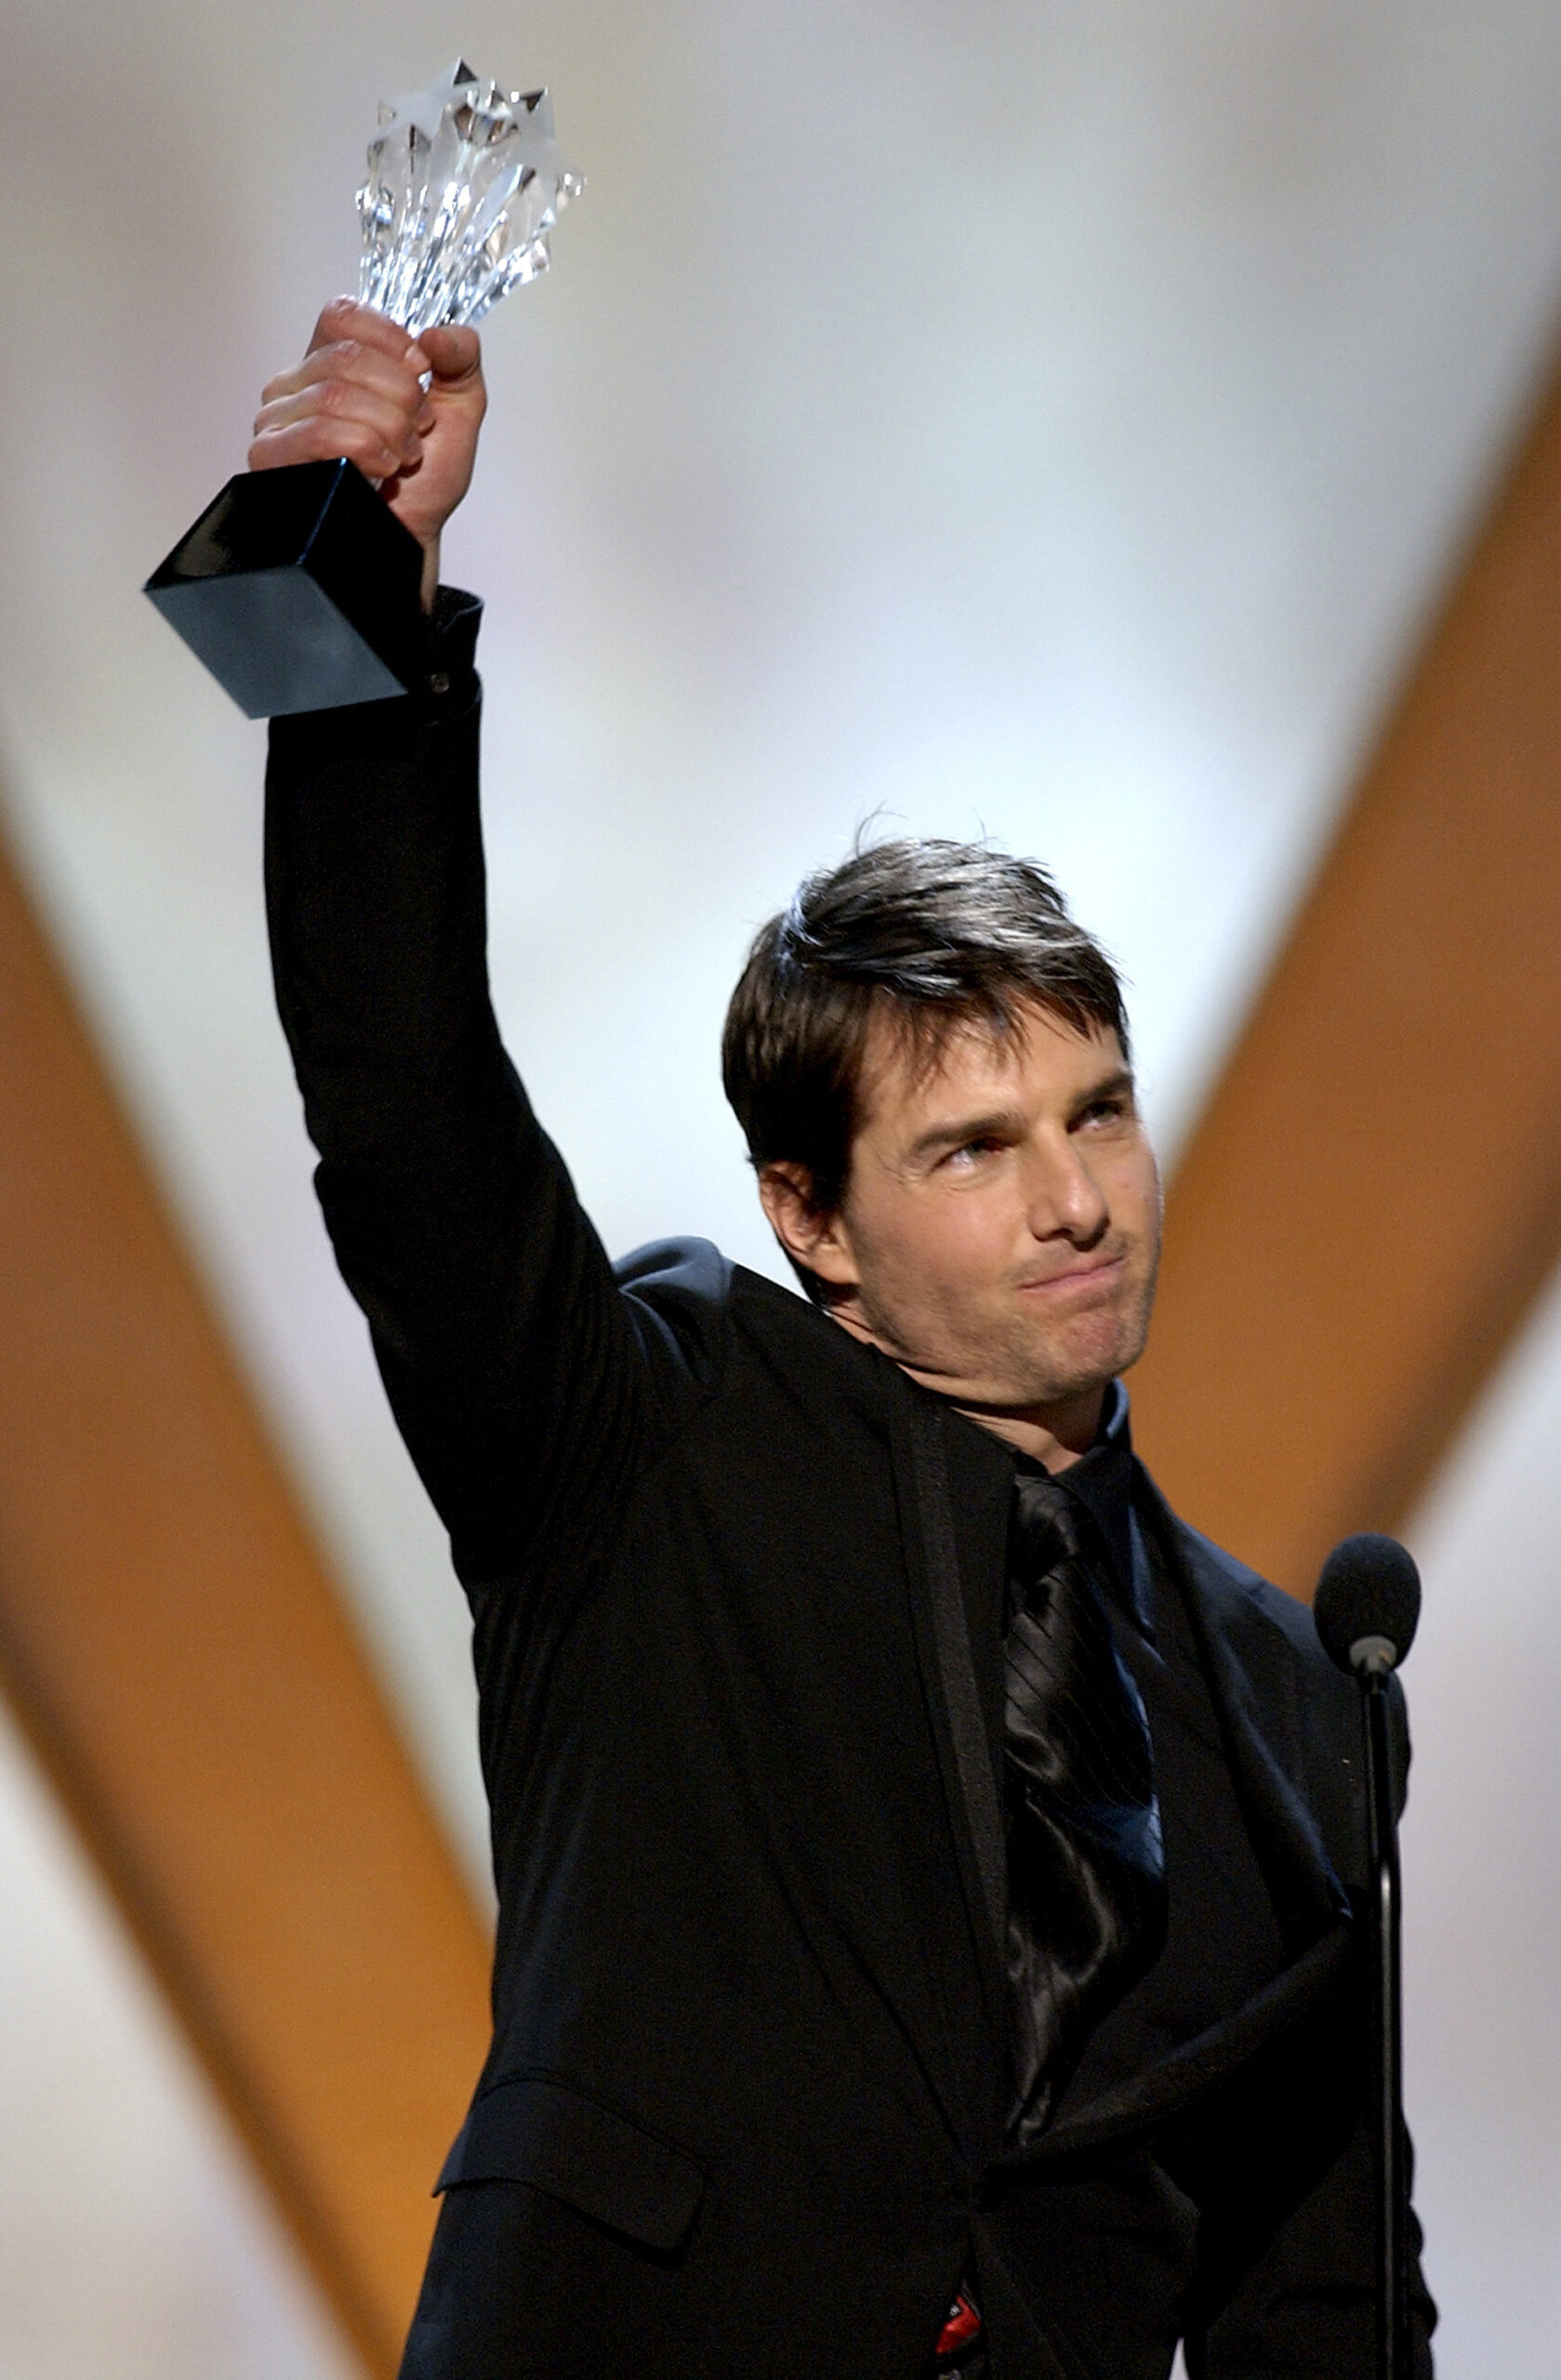 Tom Cruise turns 50